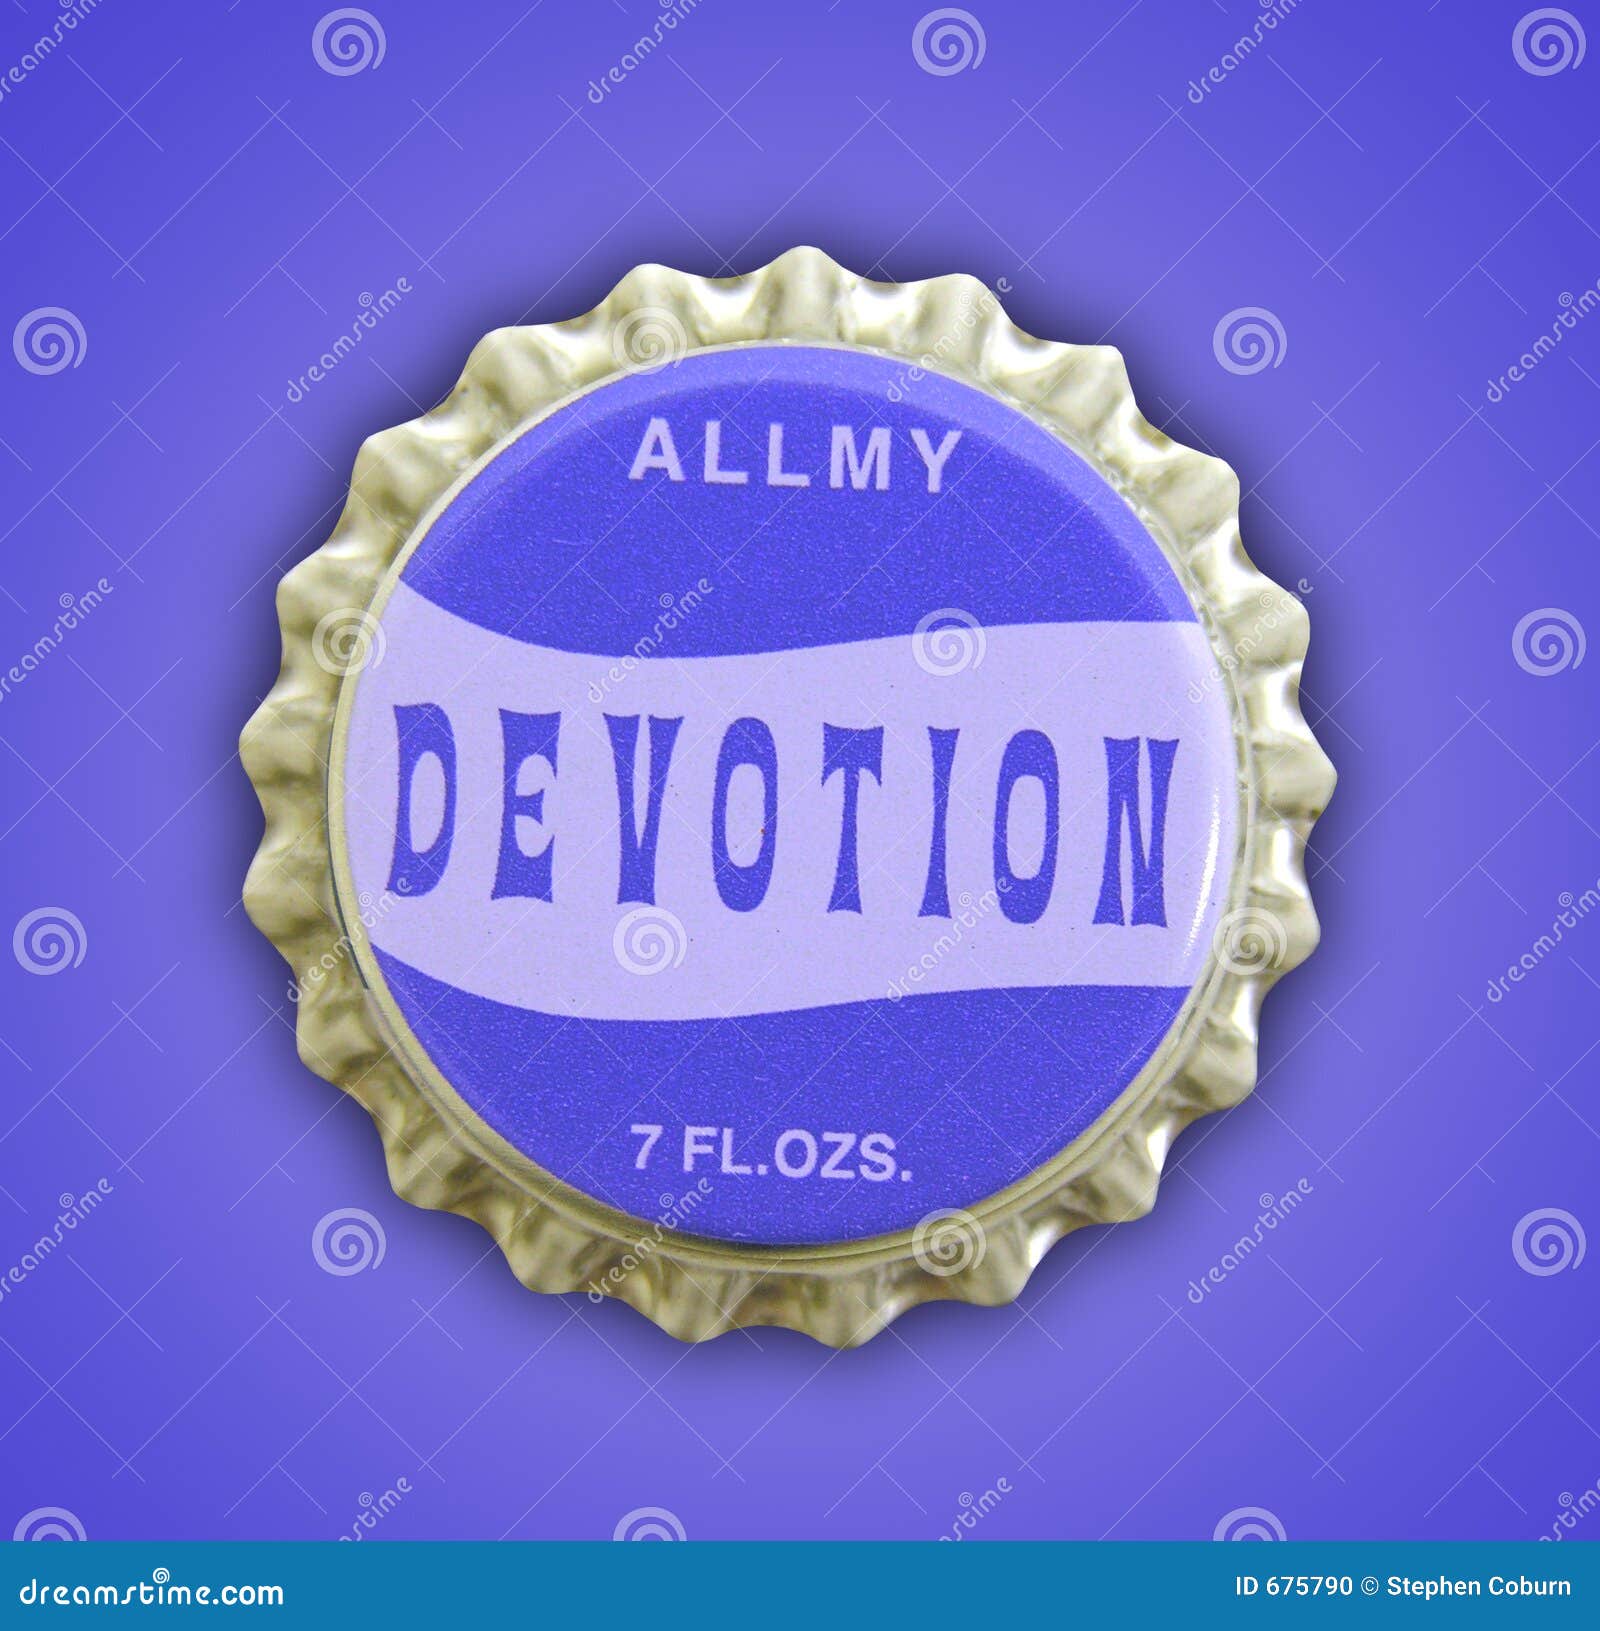 devotion themed bottlecap